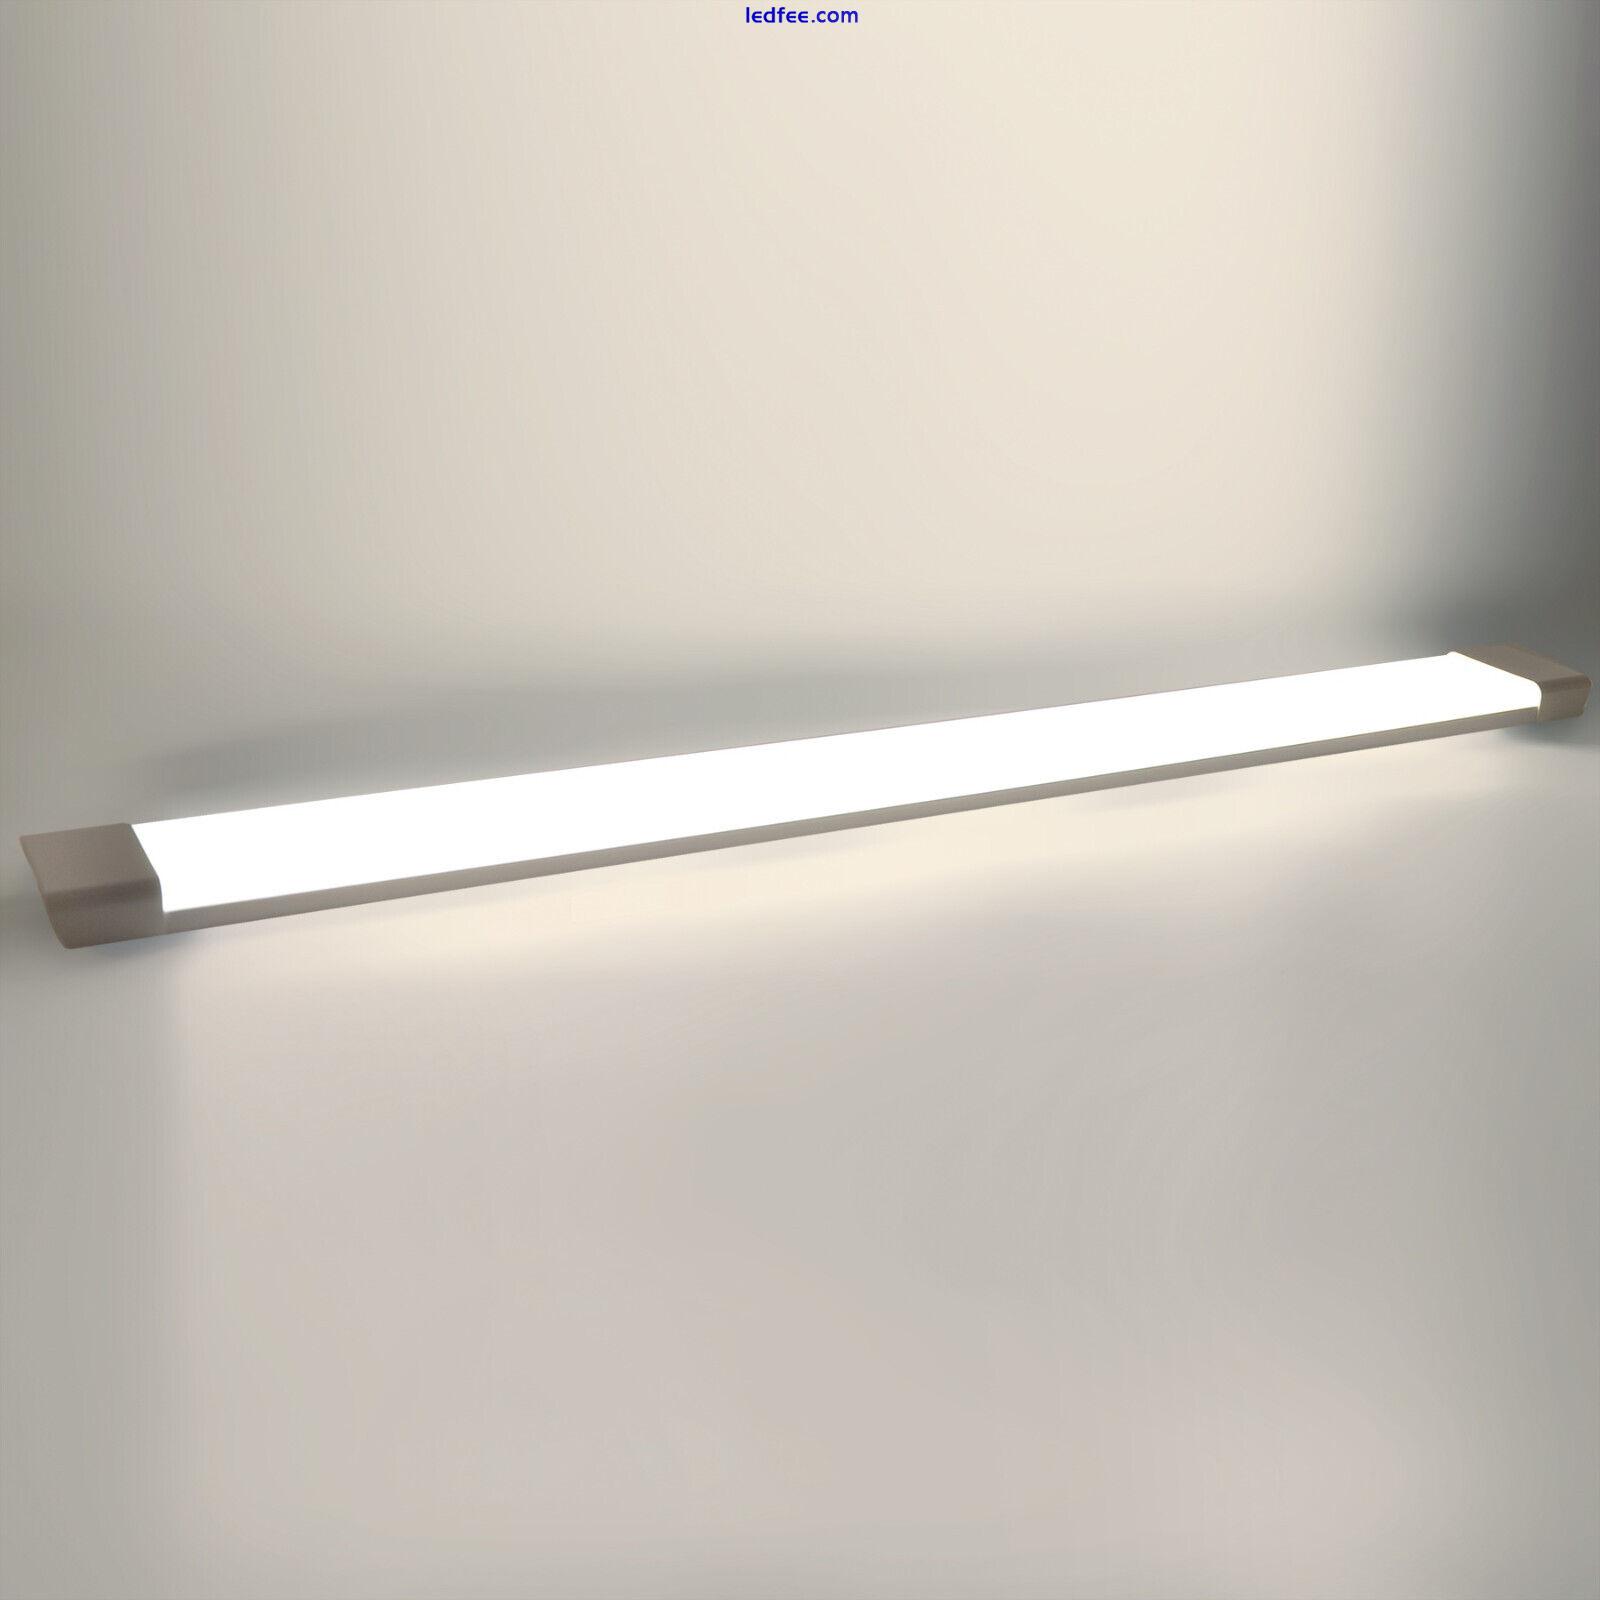 Premium LED Batten Linear Tube Light Ceiling Surface Mount 1FT 2FT 3FT 4FT 5FT 5 